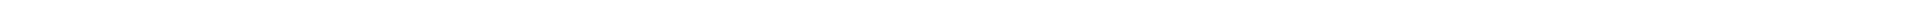 Виниры на зубы – цены в Казахстане Алматы, Астане (Нур-Султан), Усть-Каменогорске, Атырау, Уральск, Кокшетау в Казахстане, фото 10